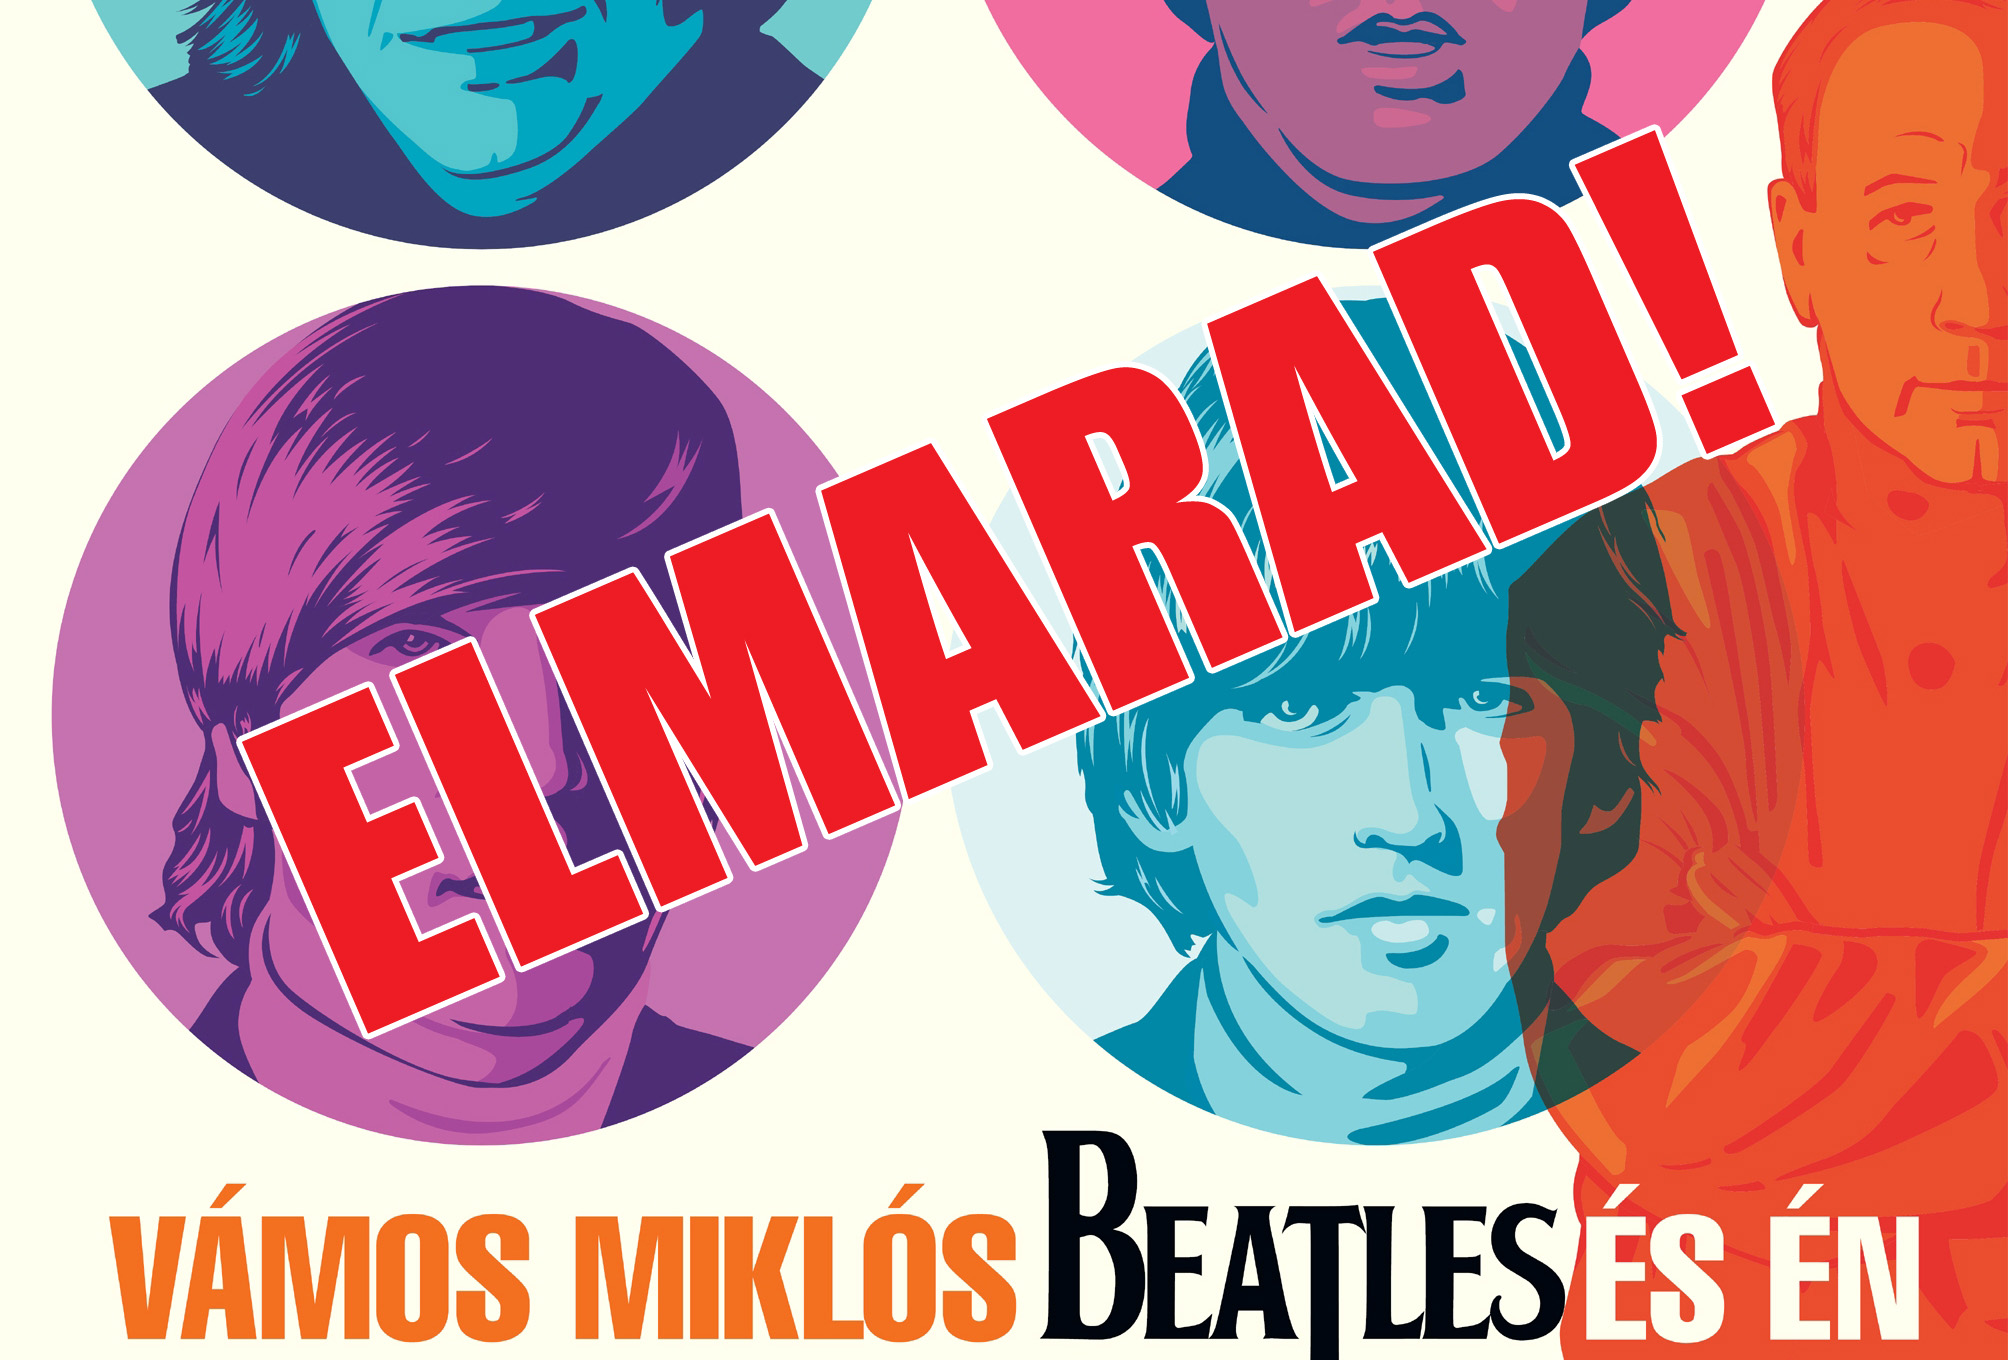 Vamos_Beatles_es_elmarad